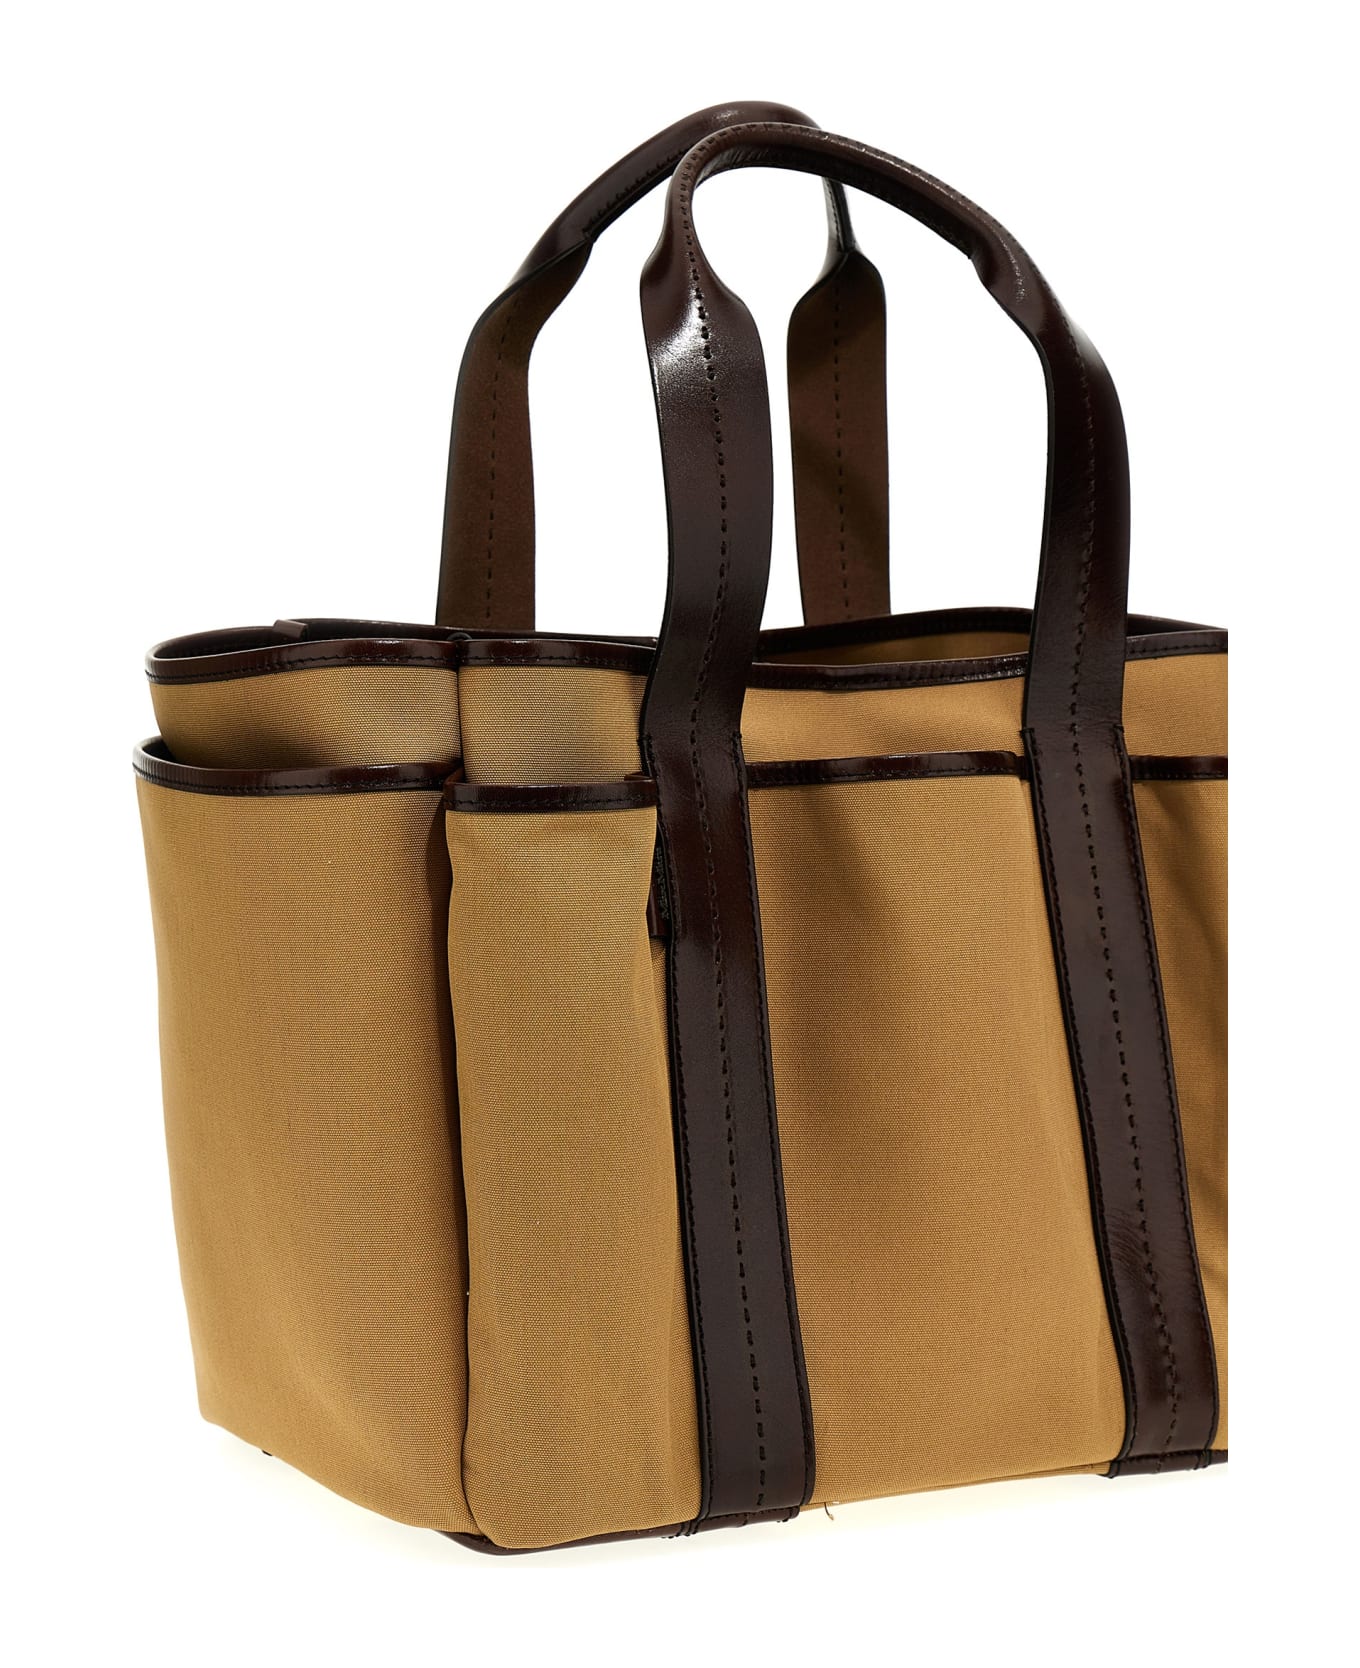 Max Mara 'garden' Shopping Bag - Brown